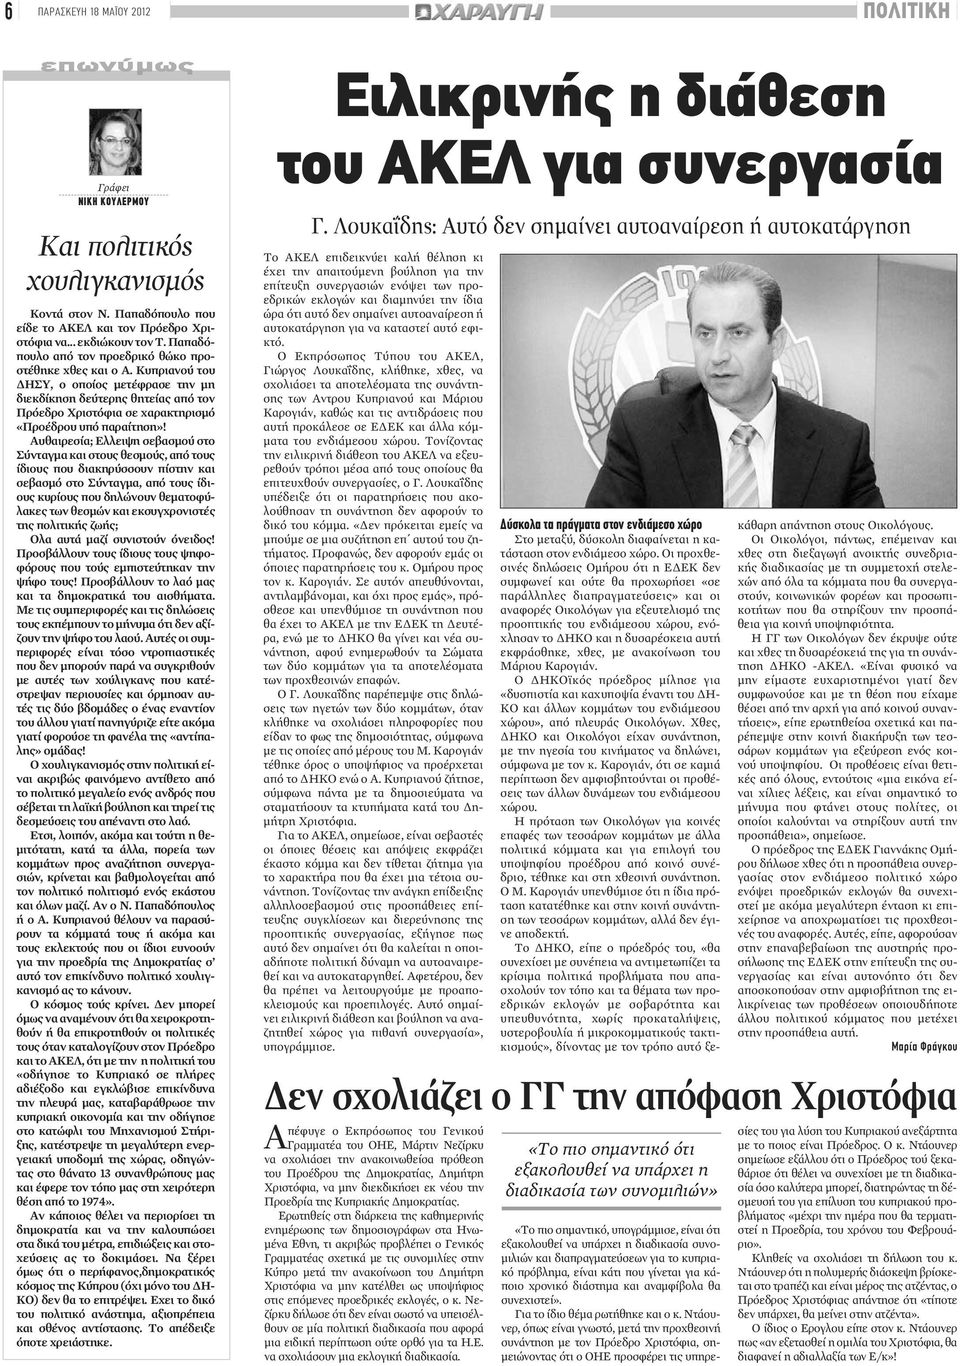 Κυπριανού του ΔΗΣΥ, ο οποίος μετέφρασε την μη διεκδίκηση δεύτερης θητείας από τον Πρόεδρο Χριστόφια σε χαρακτηρισμό «Προέδρου υπό παραίτηση»!